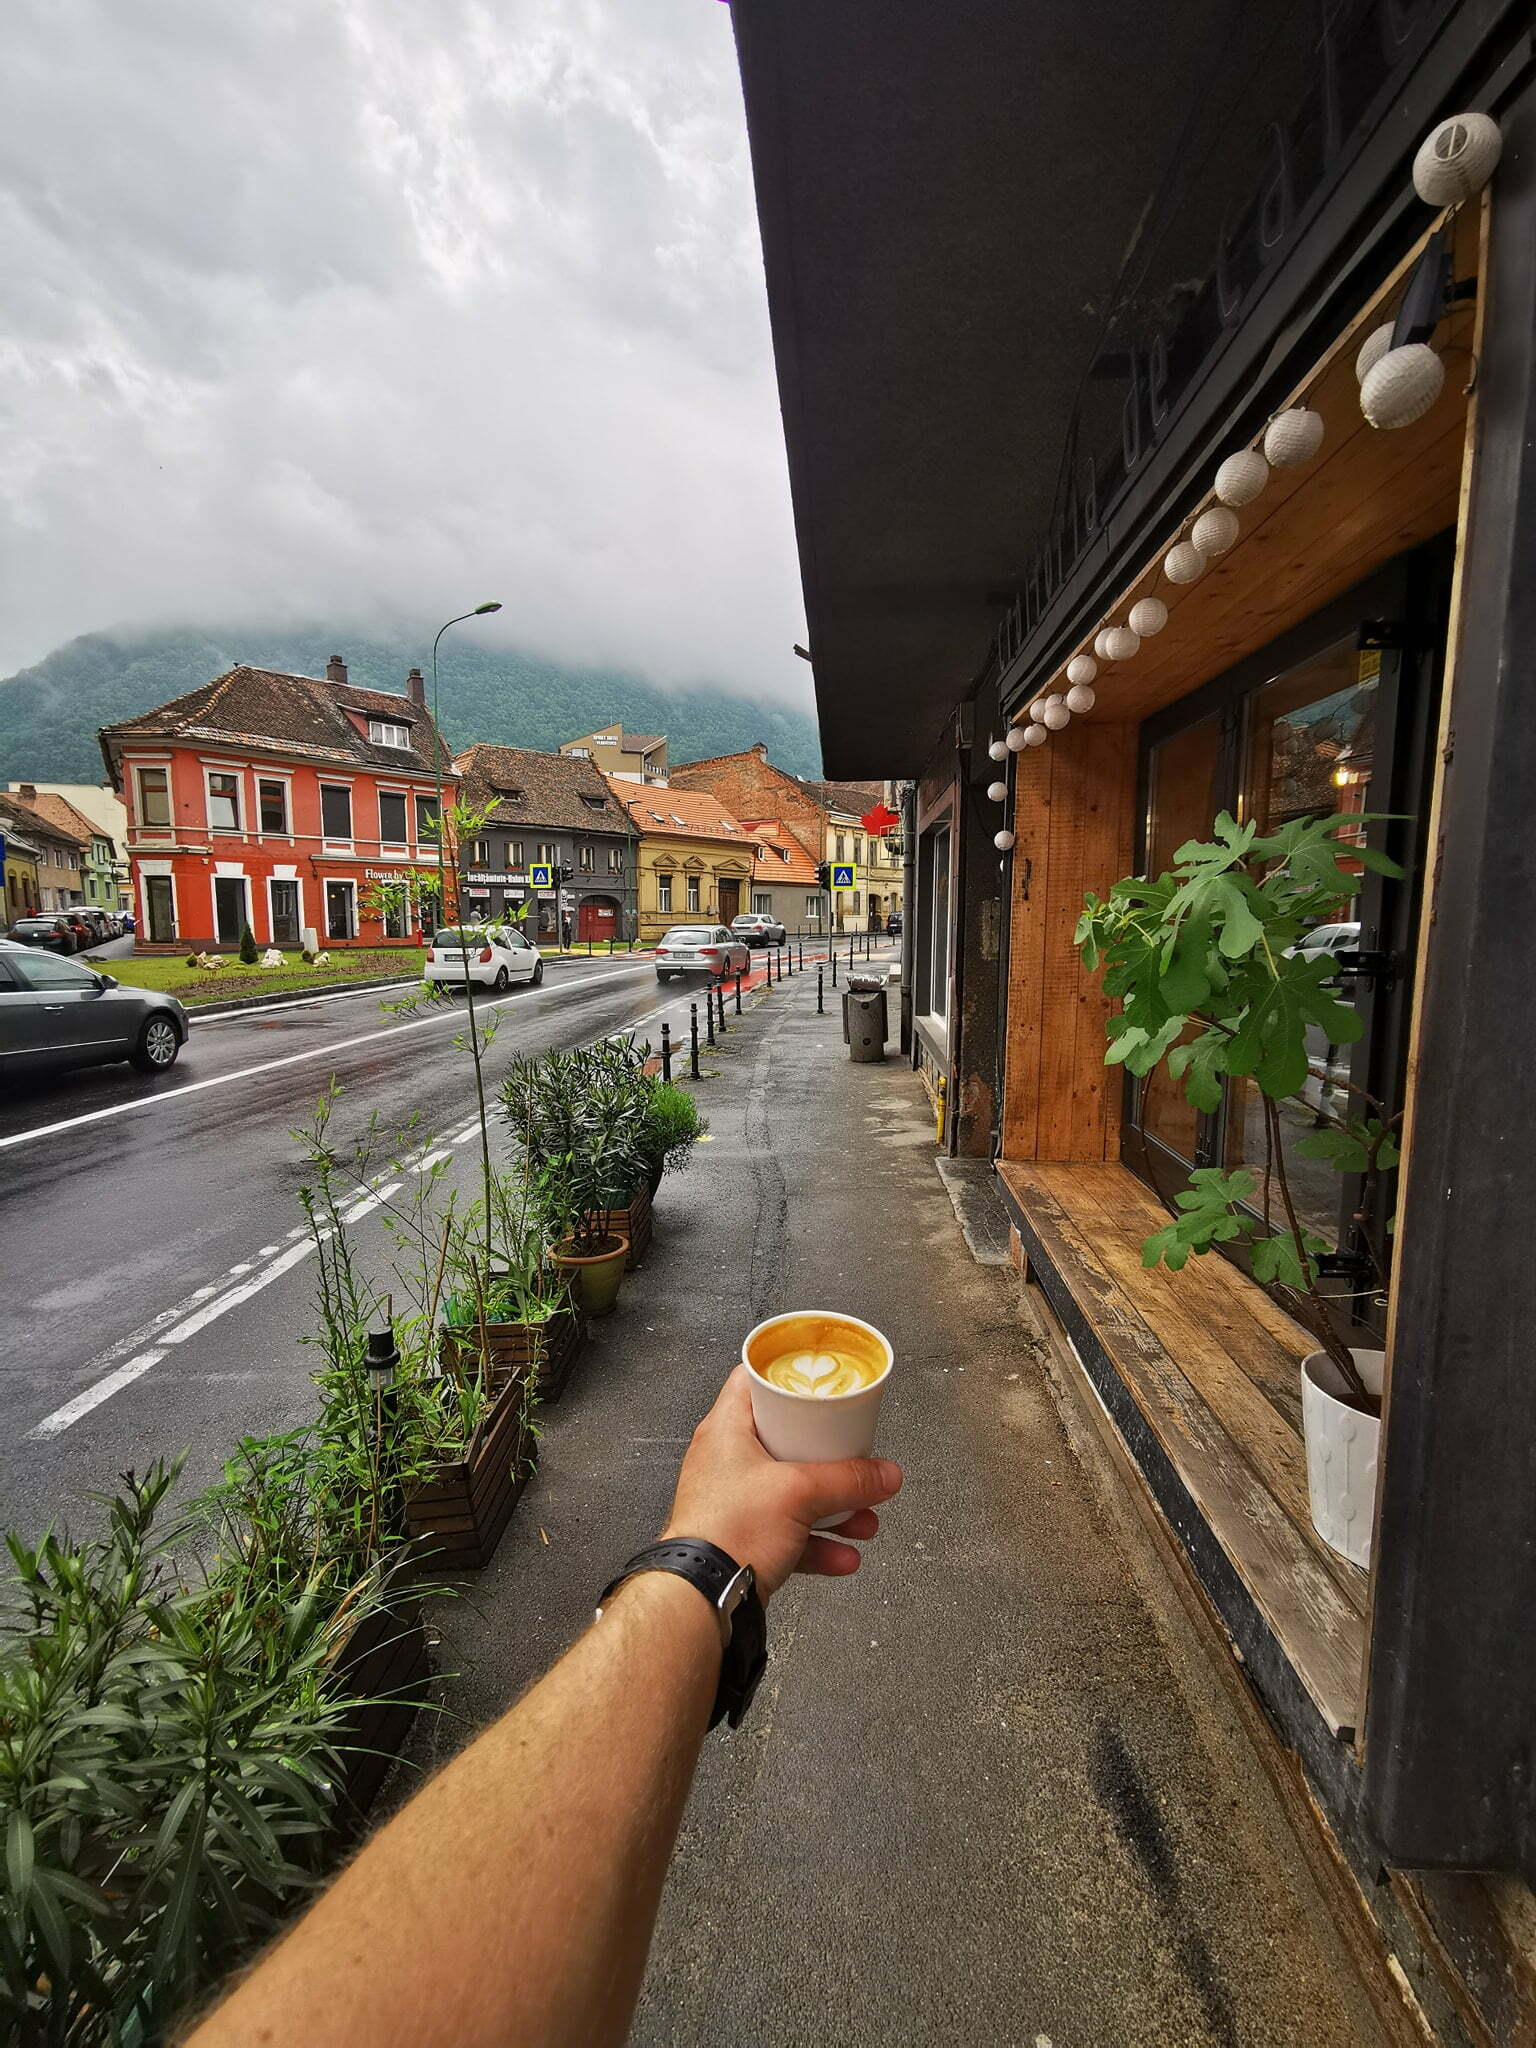 Unde bem cea mai bună cafea la Brașov?